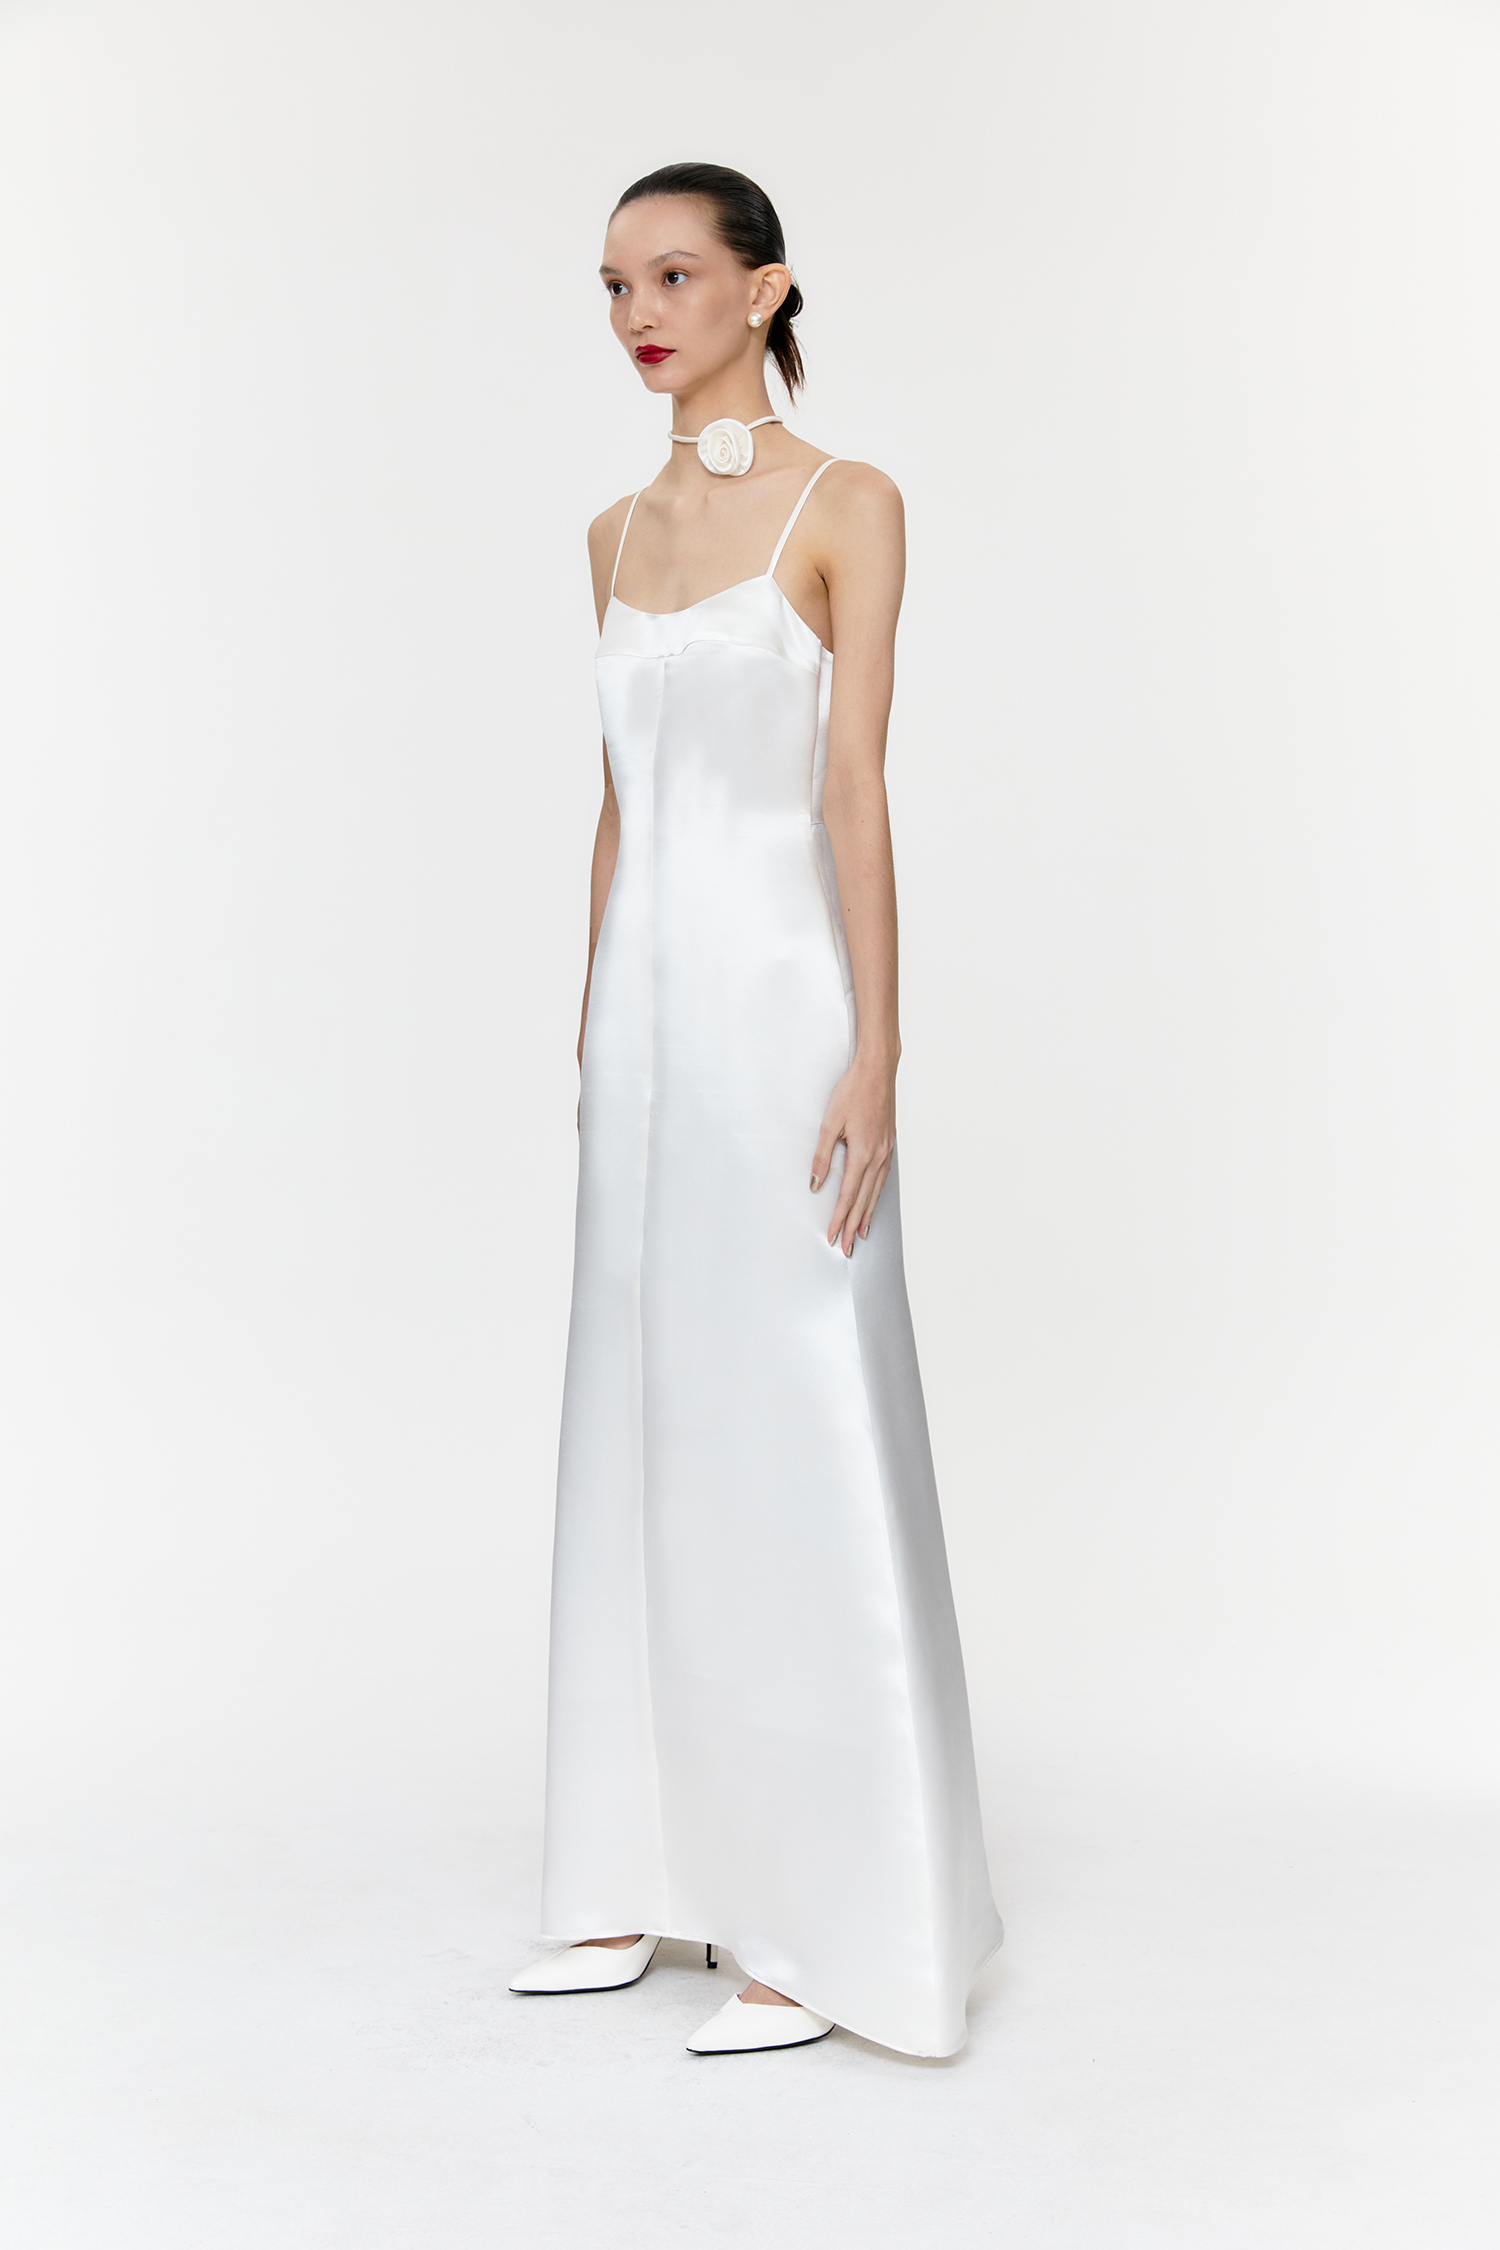 [Custom Order] The Shell-White Dress